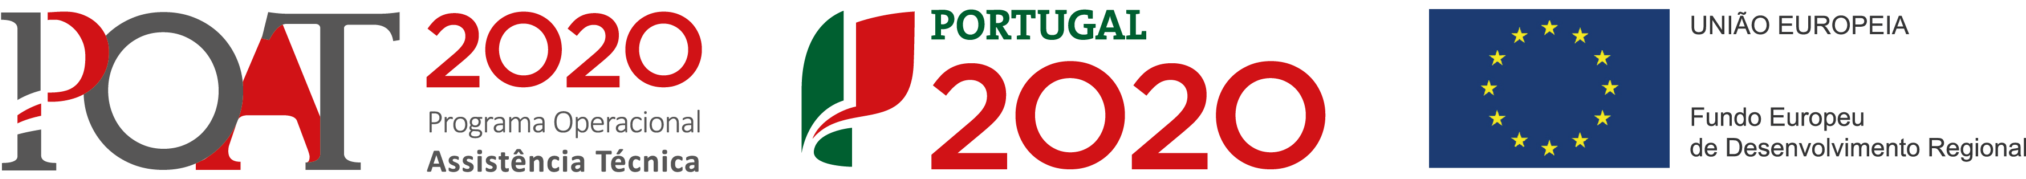 Portugal 2020 - Programa Operacional Assistência Técnica